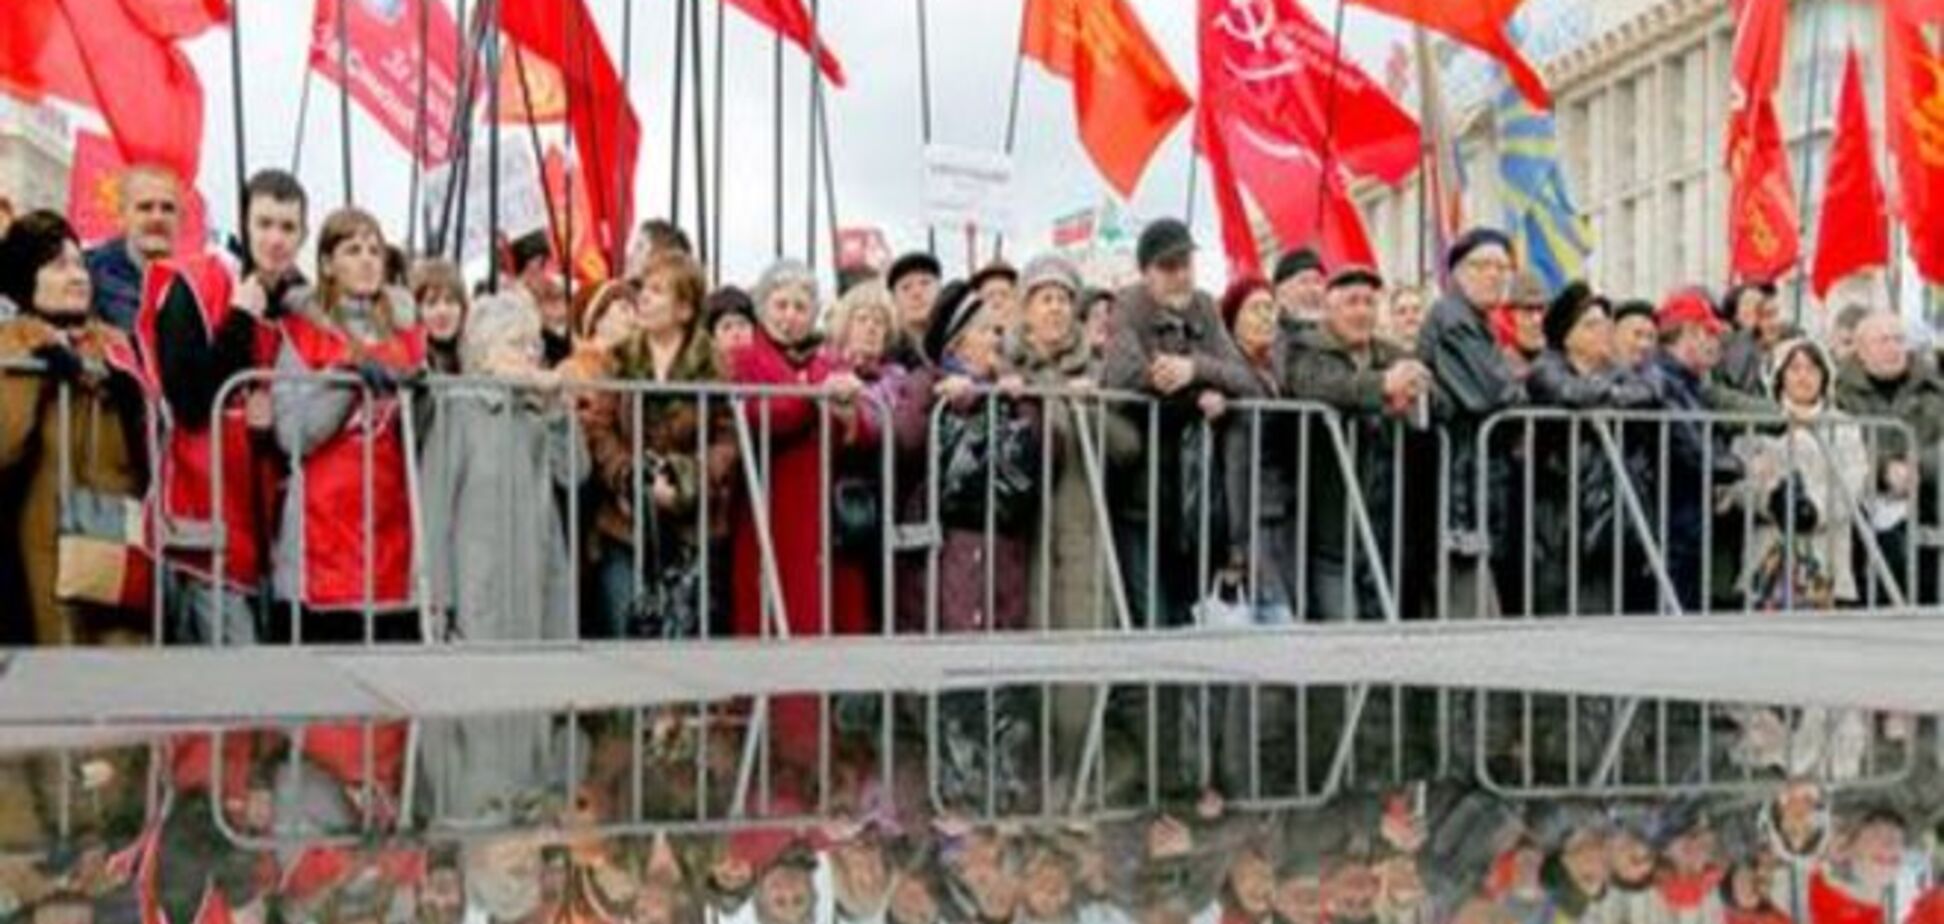 Комментарий: Украина завершает постсоветскую эпоху